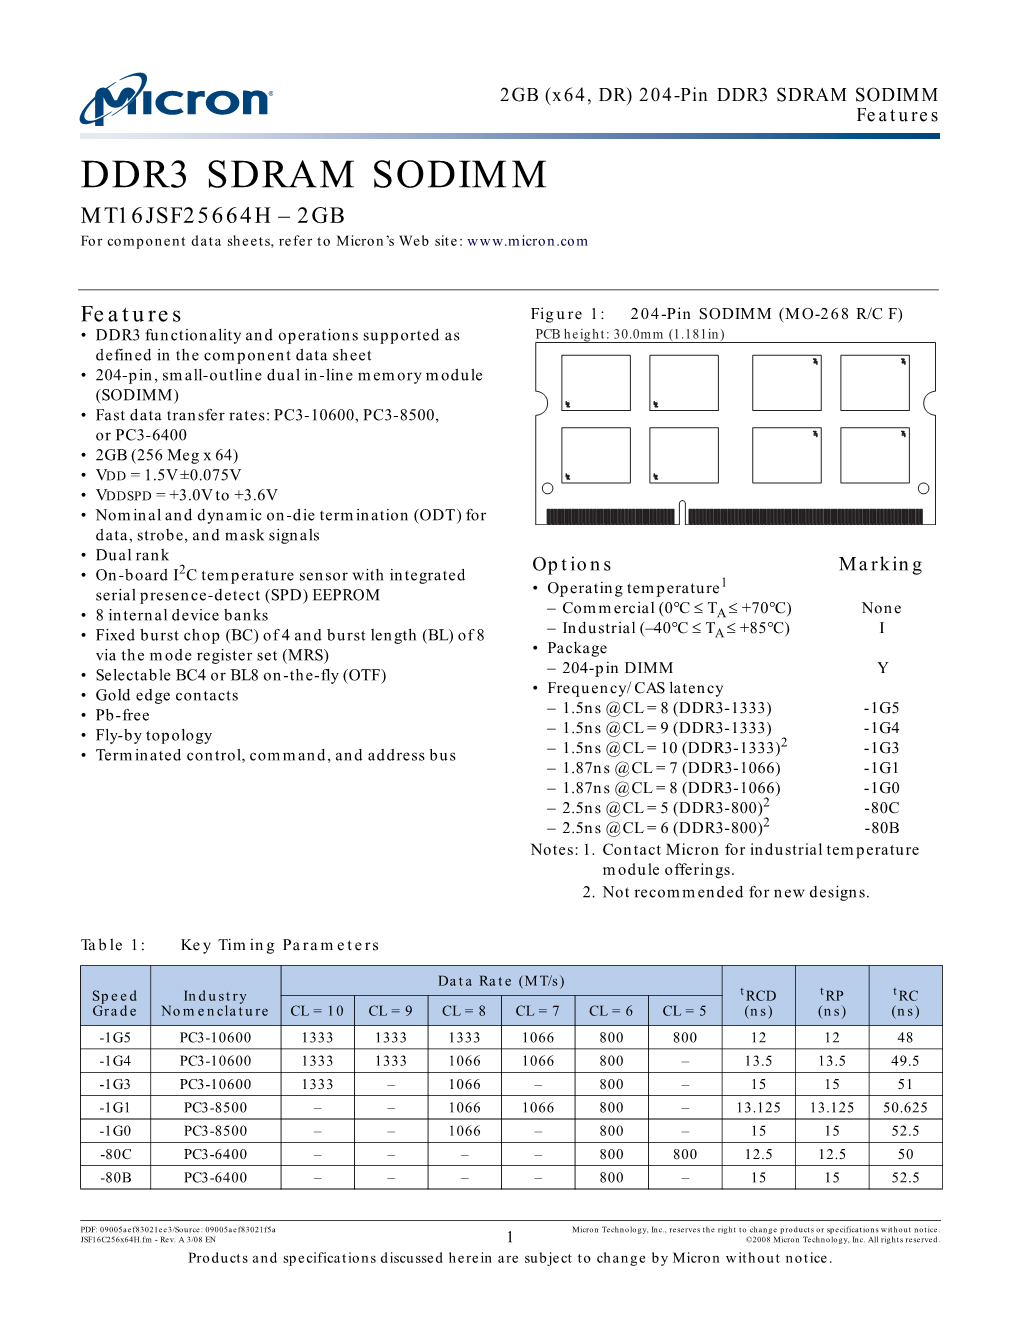 DDR3 SDRAM SODIMM 204-Pin, 2GB X64 Data Sheet